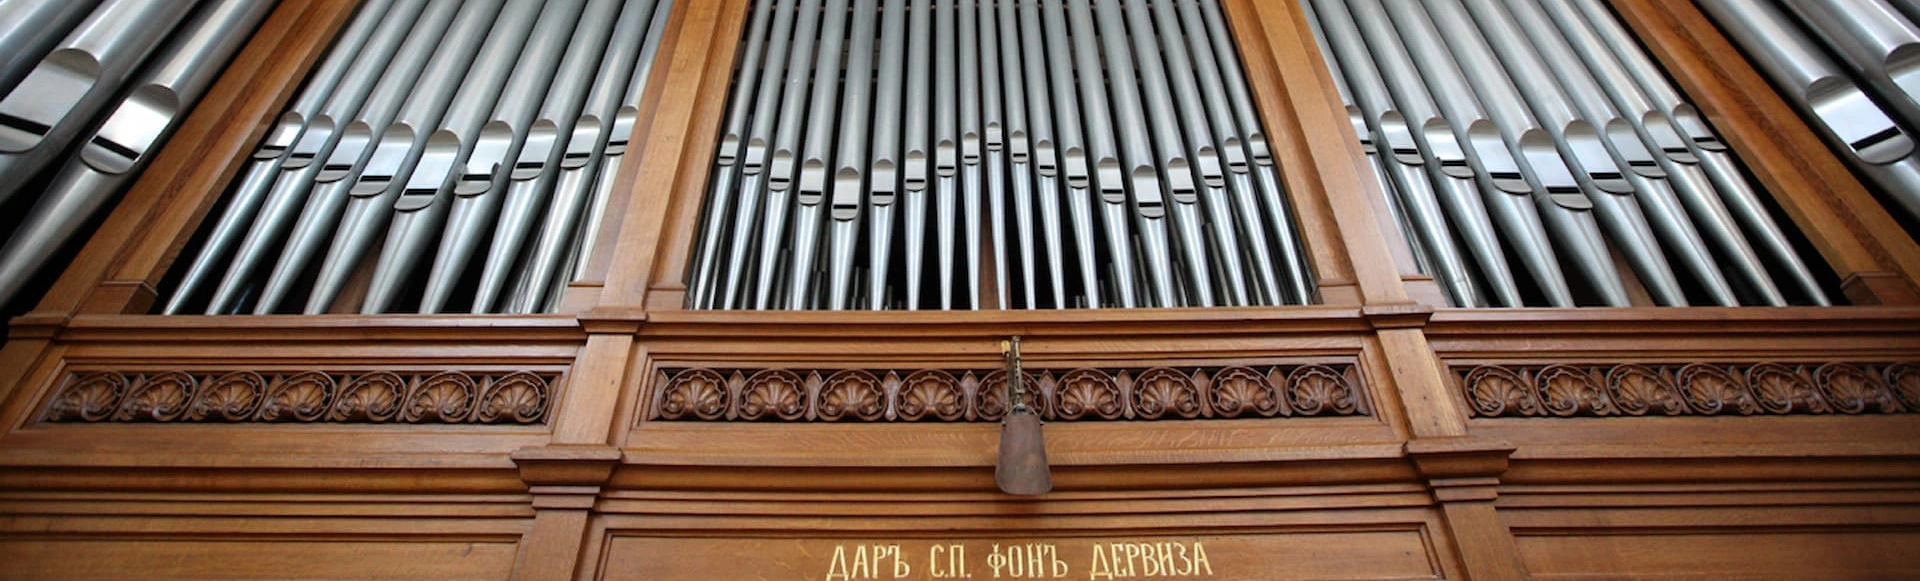 Шедевры органной музыки